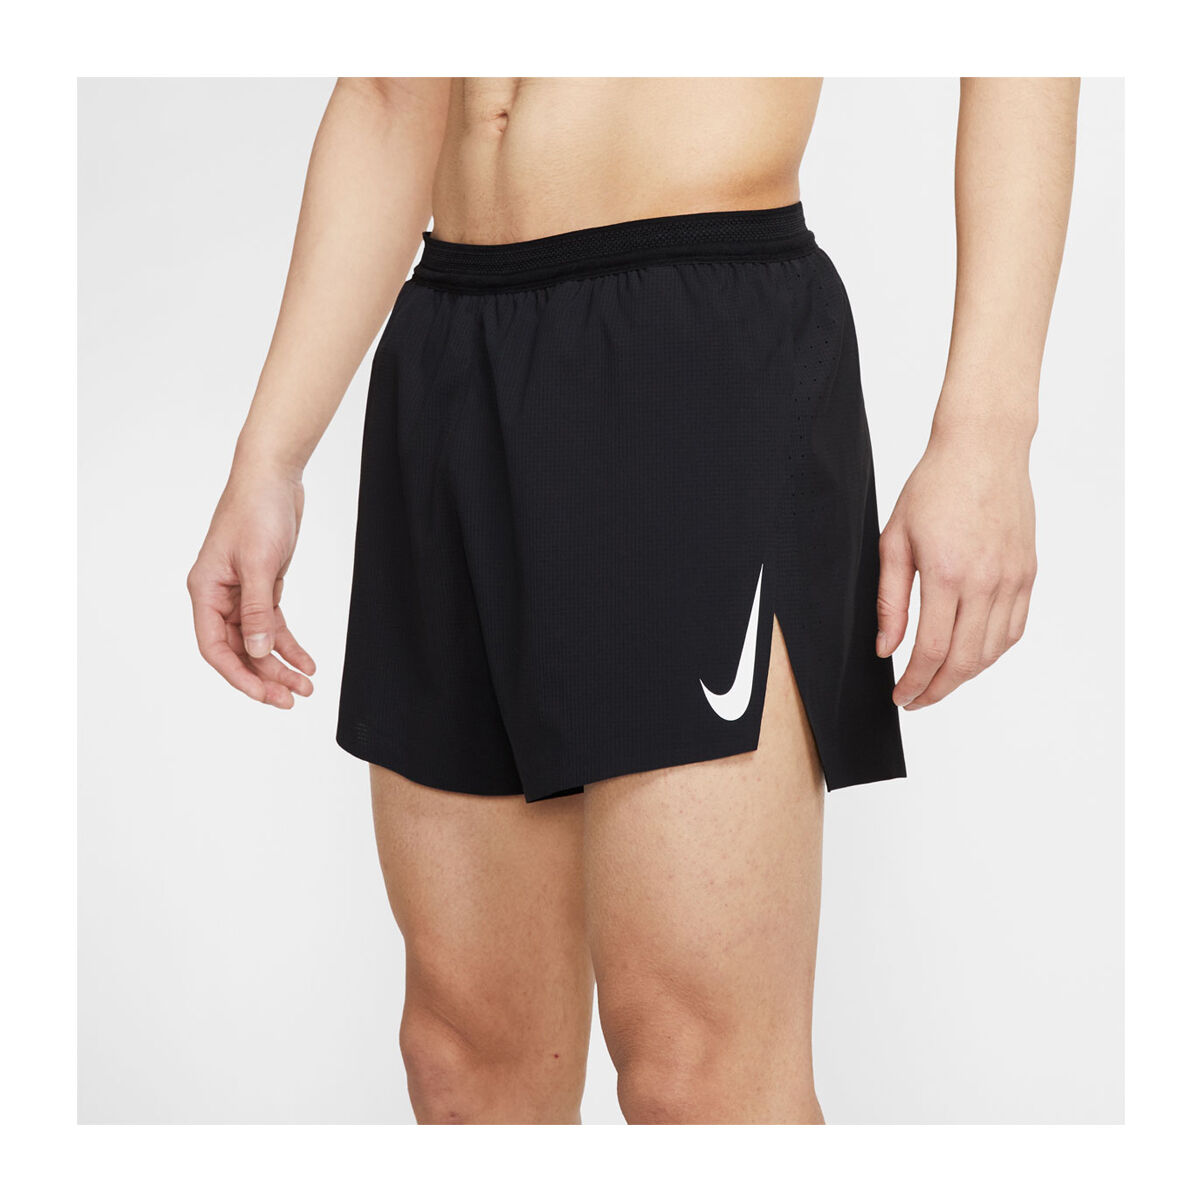 nike running shorts 4 inch